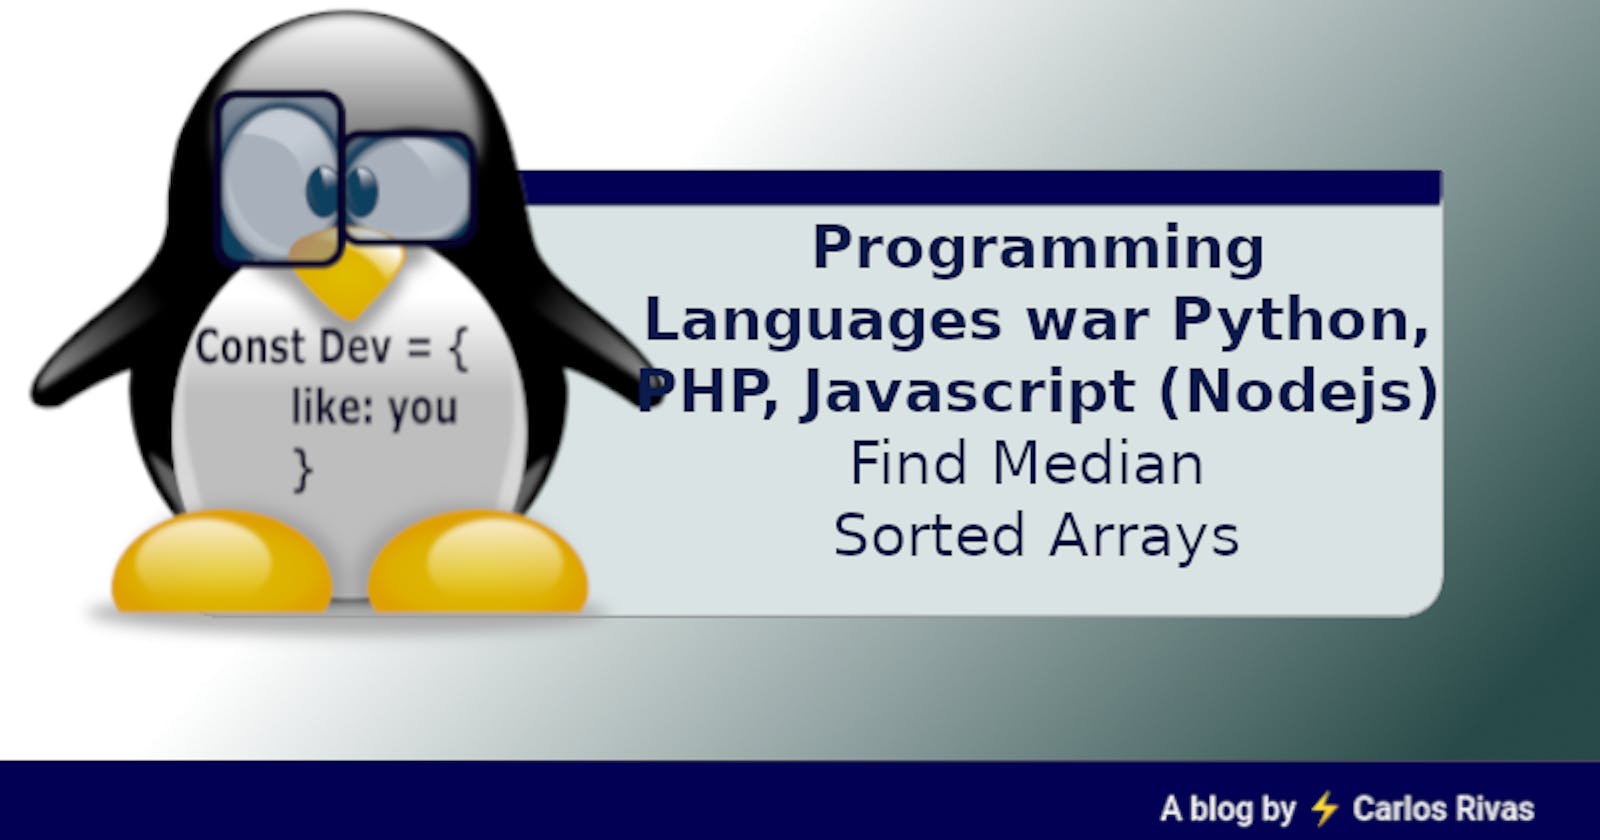 Programming Languages war
Python, PHP, Javascript (Nodejs)
Find Median Sorted Arrays